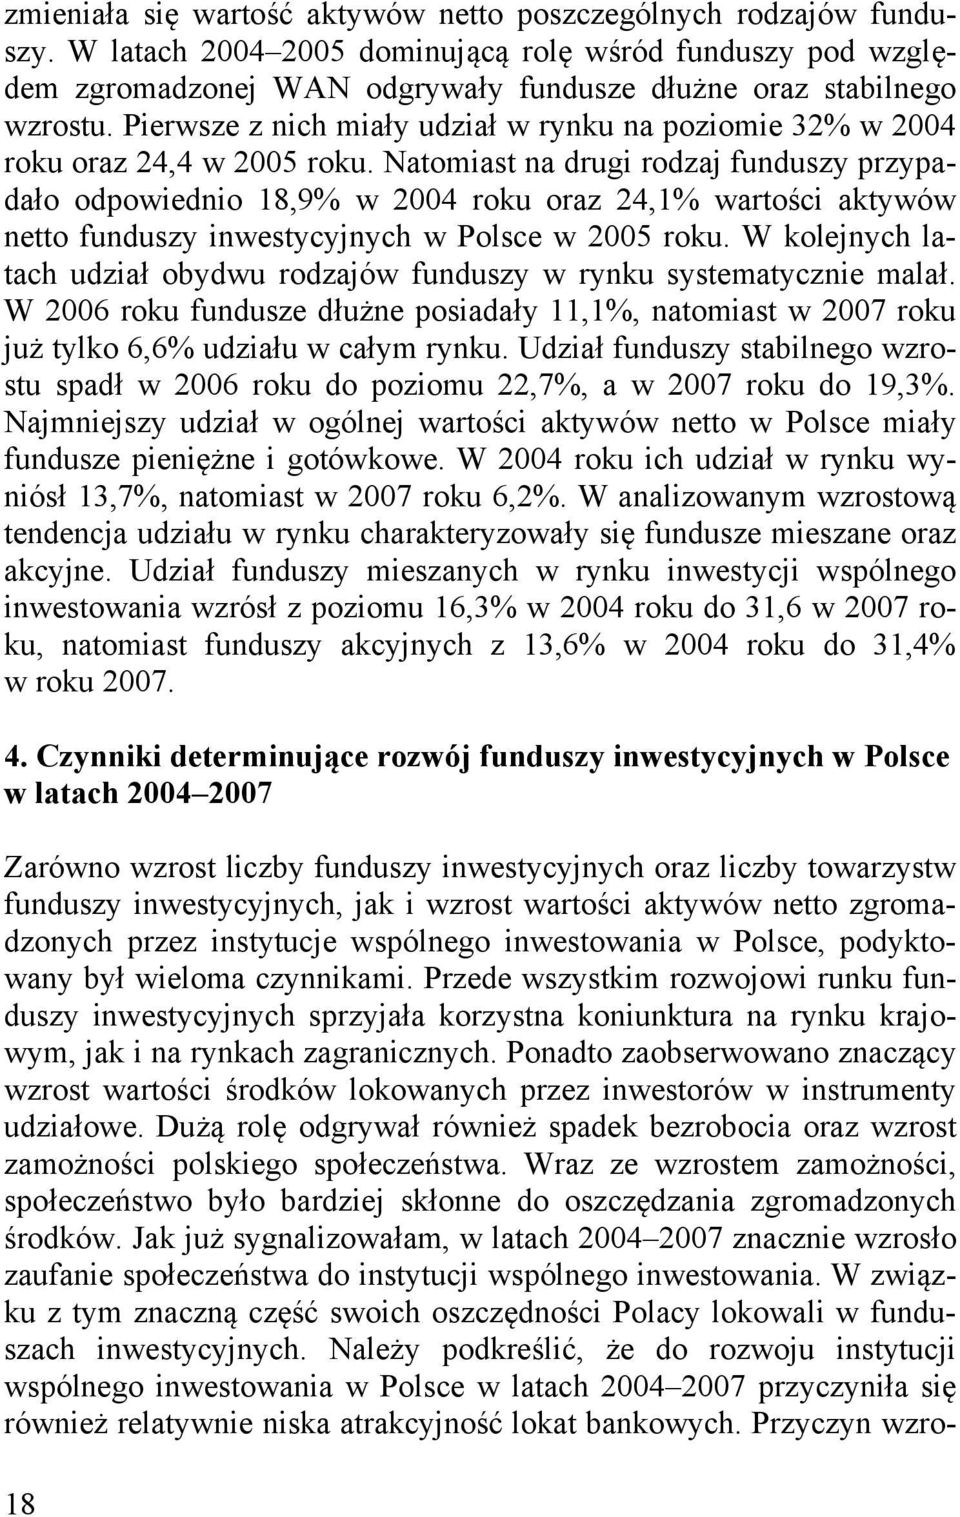 Natomiast na drugi rodzaj funduszy przypadało odpowiednio 18,9% w 2004 roku oraz 24,1% wartości aktywów netto funduszy inwestycyjnych w Polsce w 2005 roku.